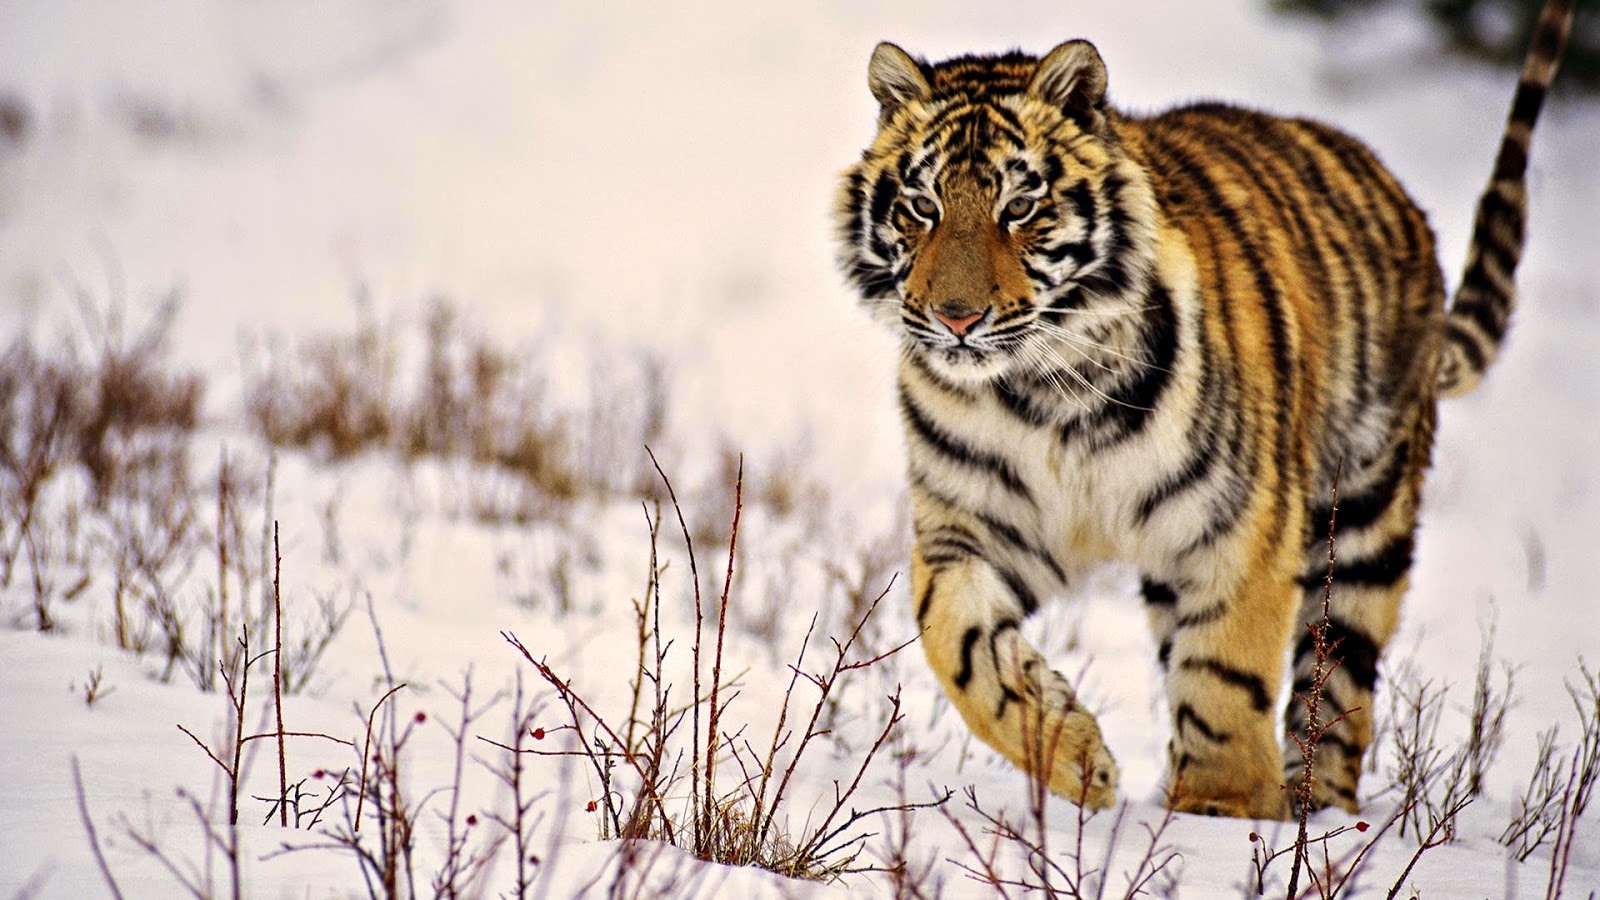 tiger wallpaper free download,tiger,mammal,wildlife,vertebrate,bengal tiger